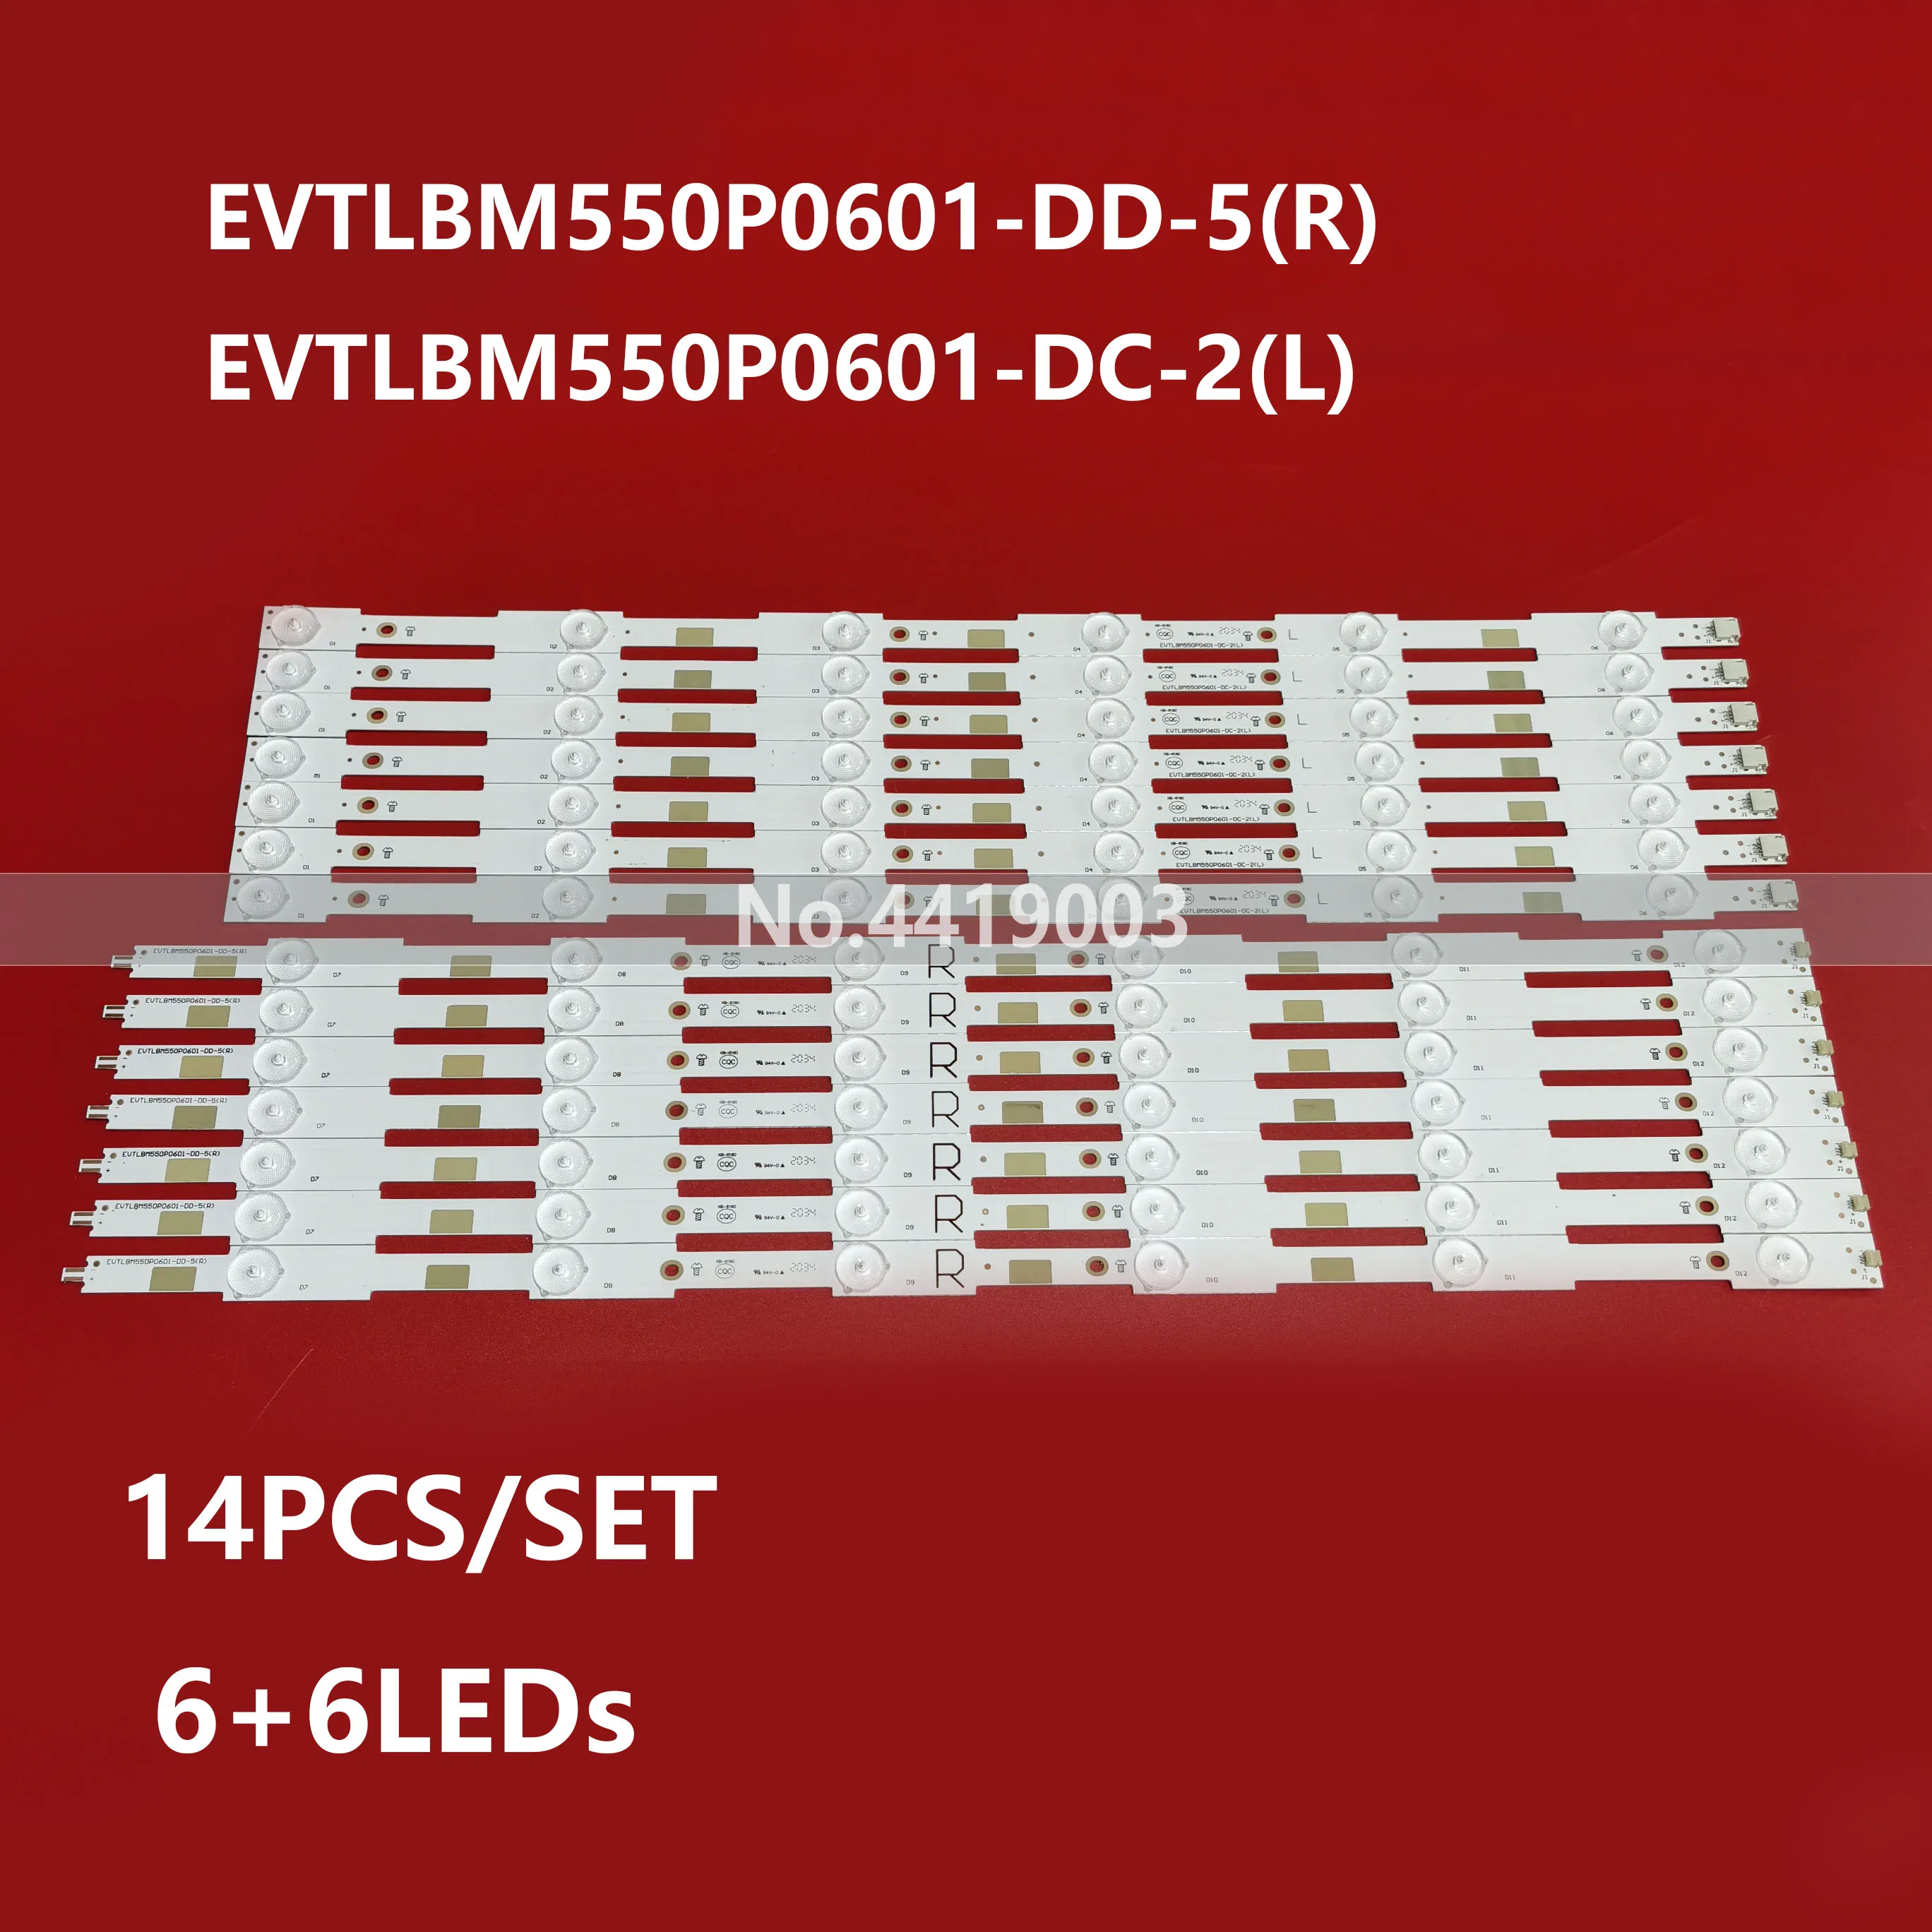 

New 14PCS LED Strips For PHI LIPS 55 TV 55PUS6272 BDL5530QL 00 55PUT6400 TPT550U2 LB55043 EVTLBM550P0601 55PFF5650/T3 55PFF6650